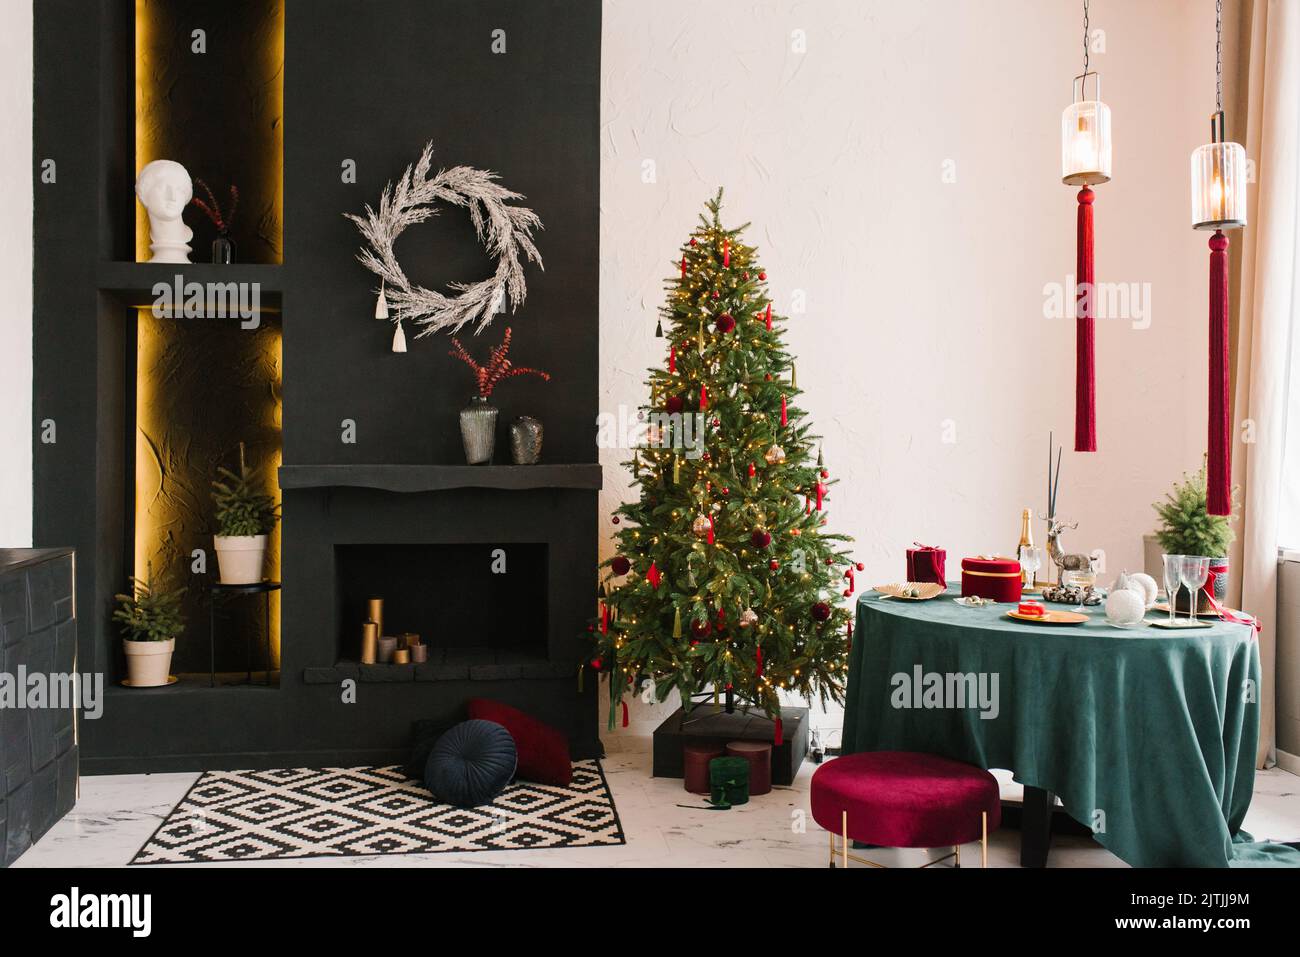 Stilvolles, luxuriöses Interieur des Esszimmers mit einem Weihnachtsbaum. Ein Stuhl neben einem runden Tisch und einem Kamin. Klassisches, modernes Haus Stockfoto